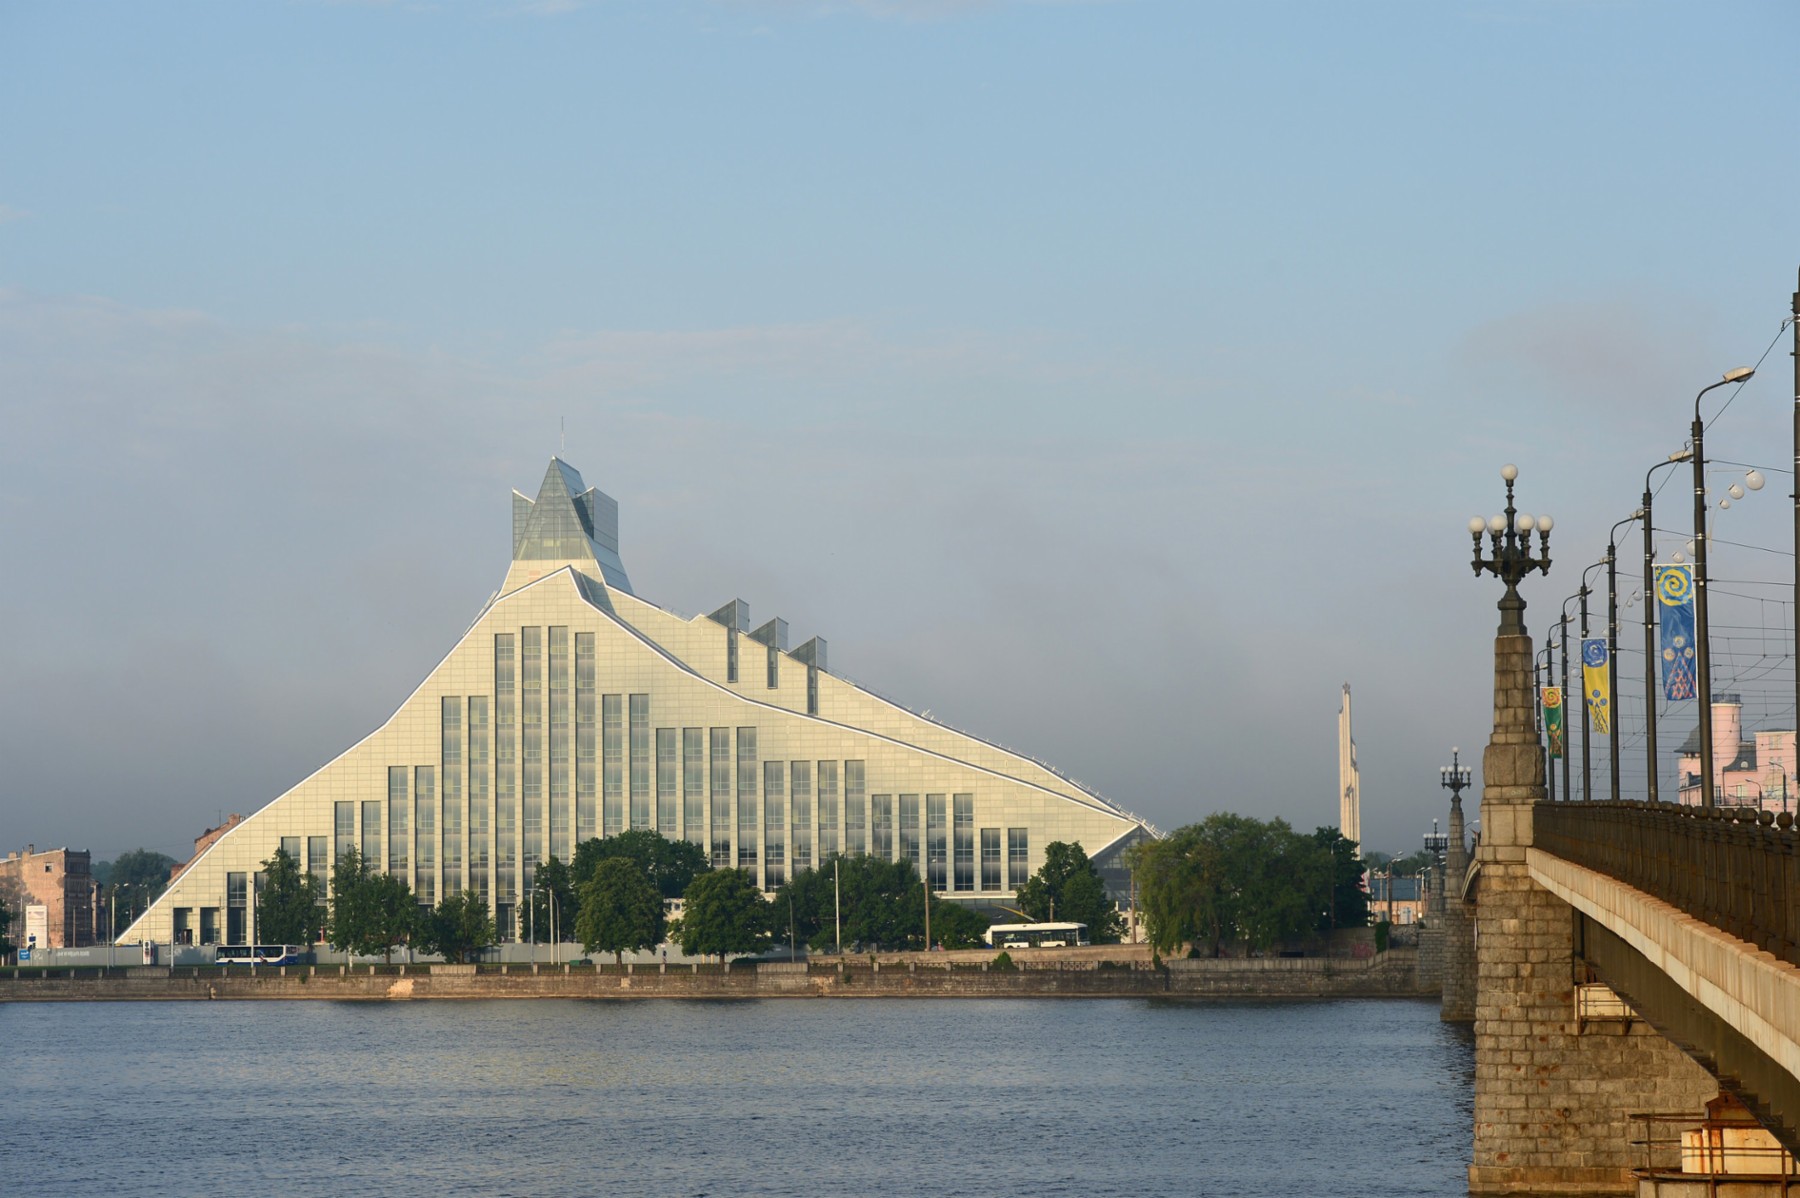 "Gaimas pils" wird die neue Nationalbibliothek von Riga auf lettisch genannt: Schloss des Lichts.